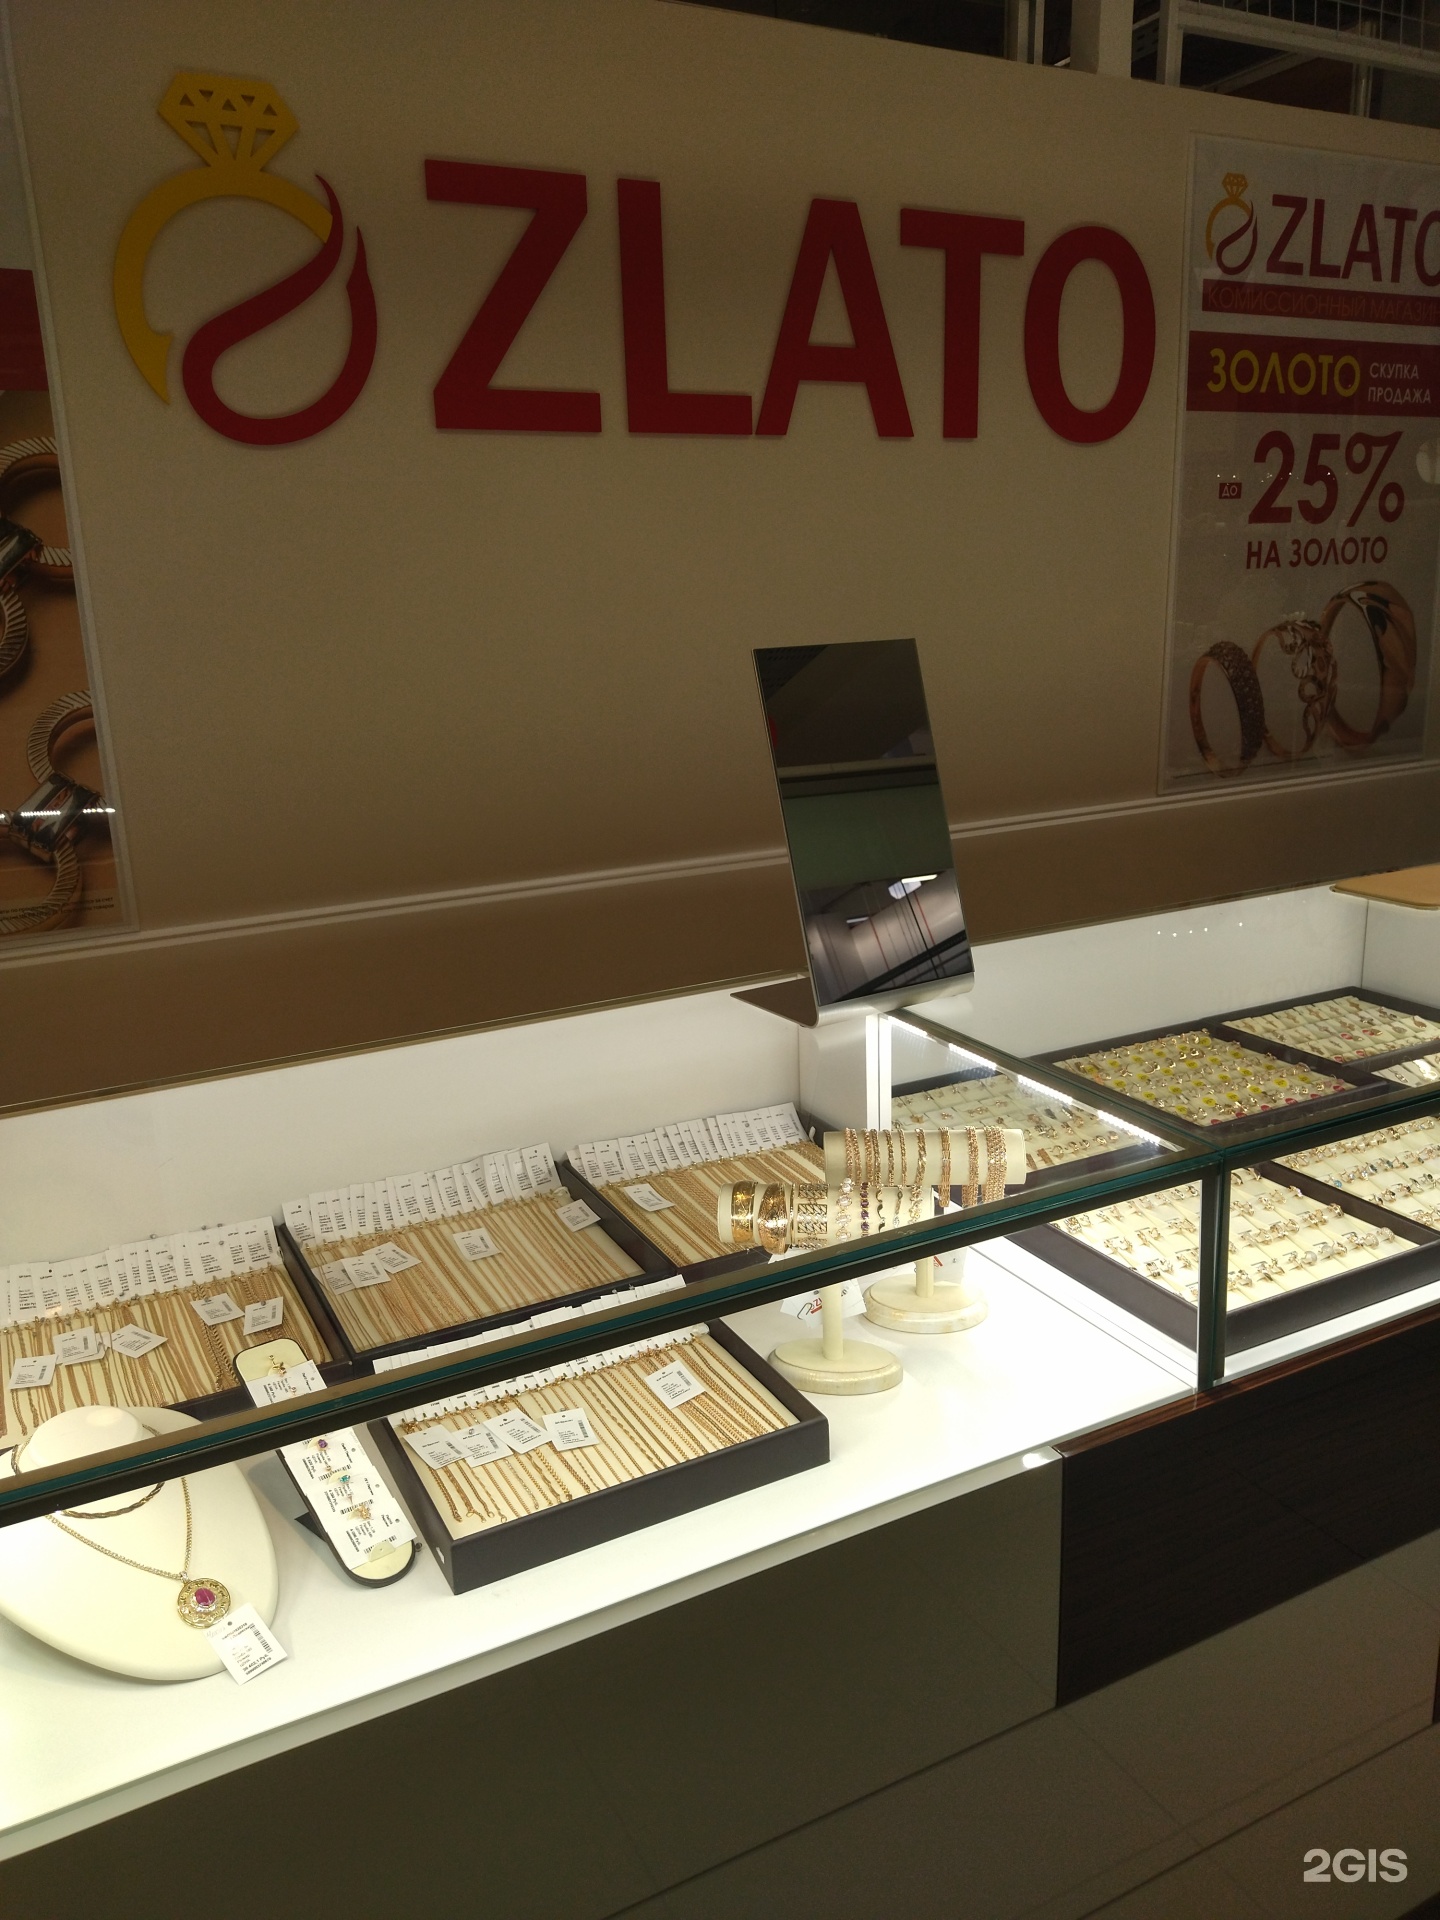 Zlato, комиссионный ювелирный магазин, ТК EUROSPAR, 22 Апреля, 38 к8, Омск— 2ГИС